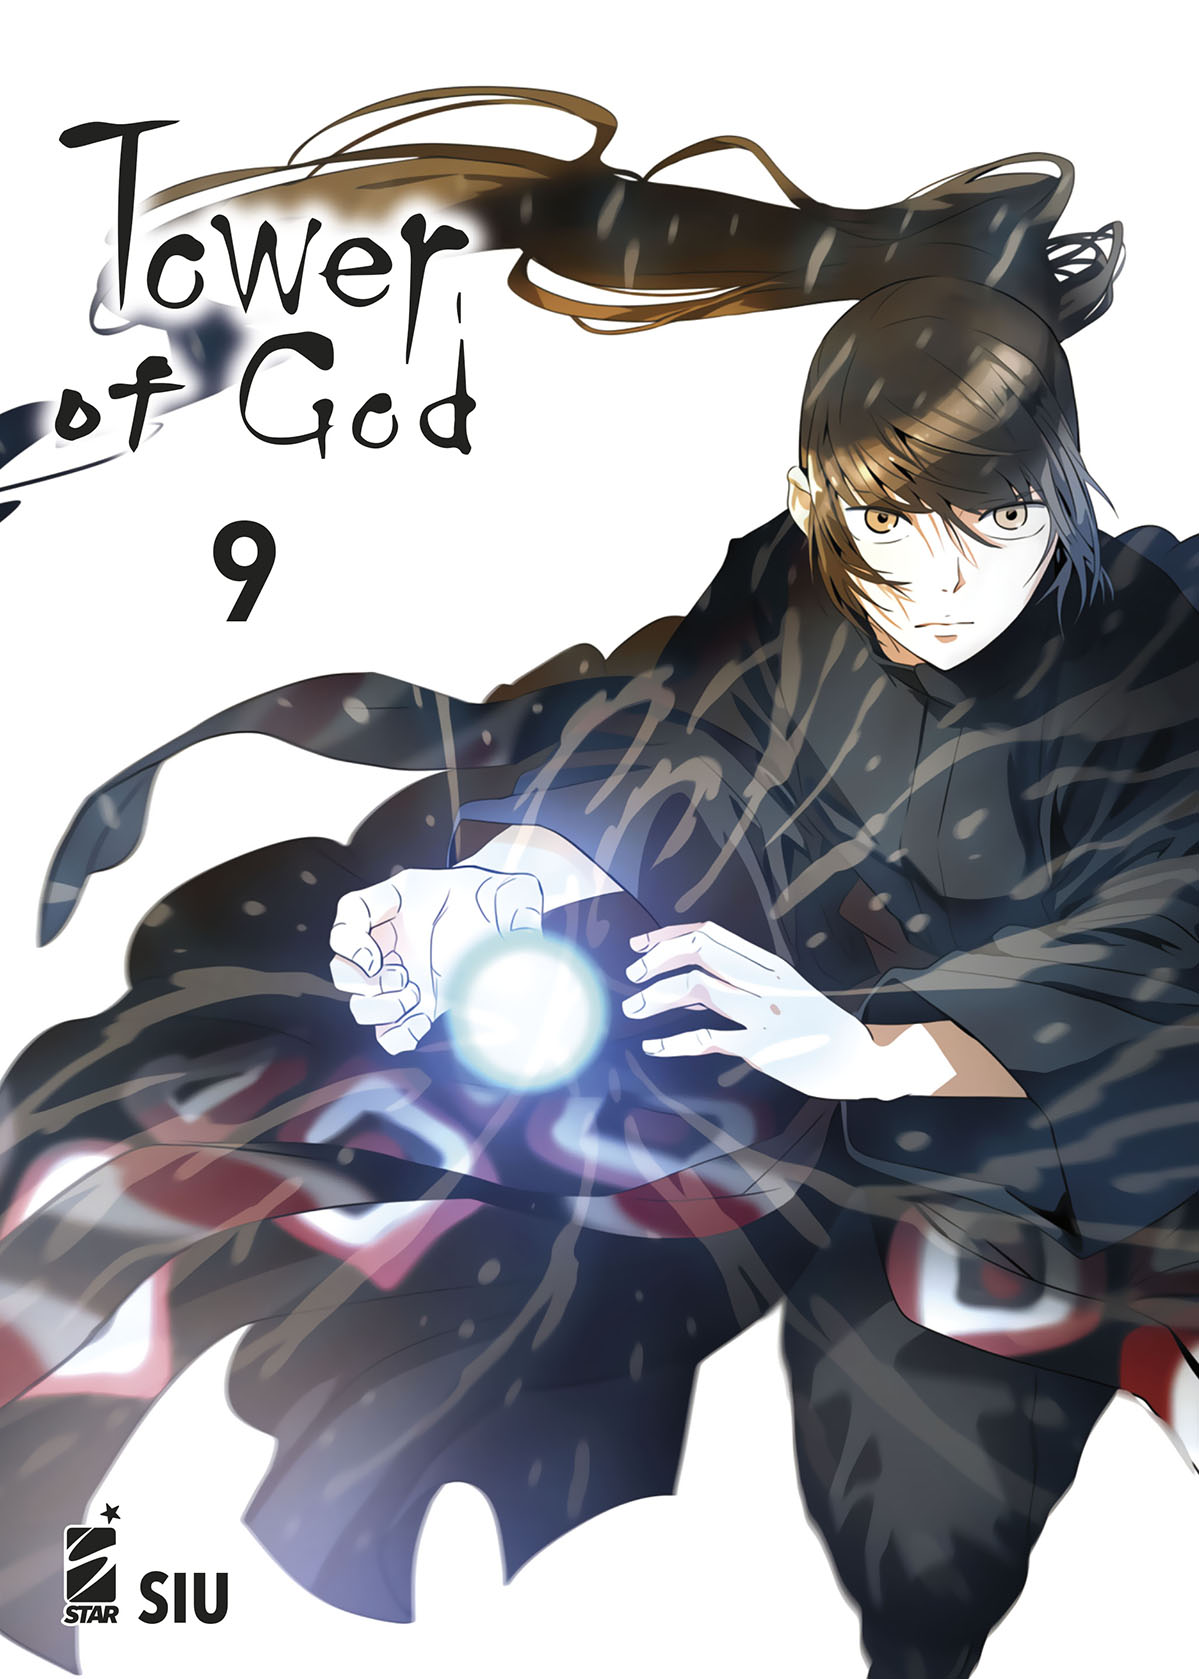 Manga – Star Comics – Tower of God #9